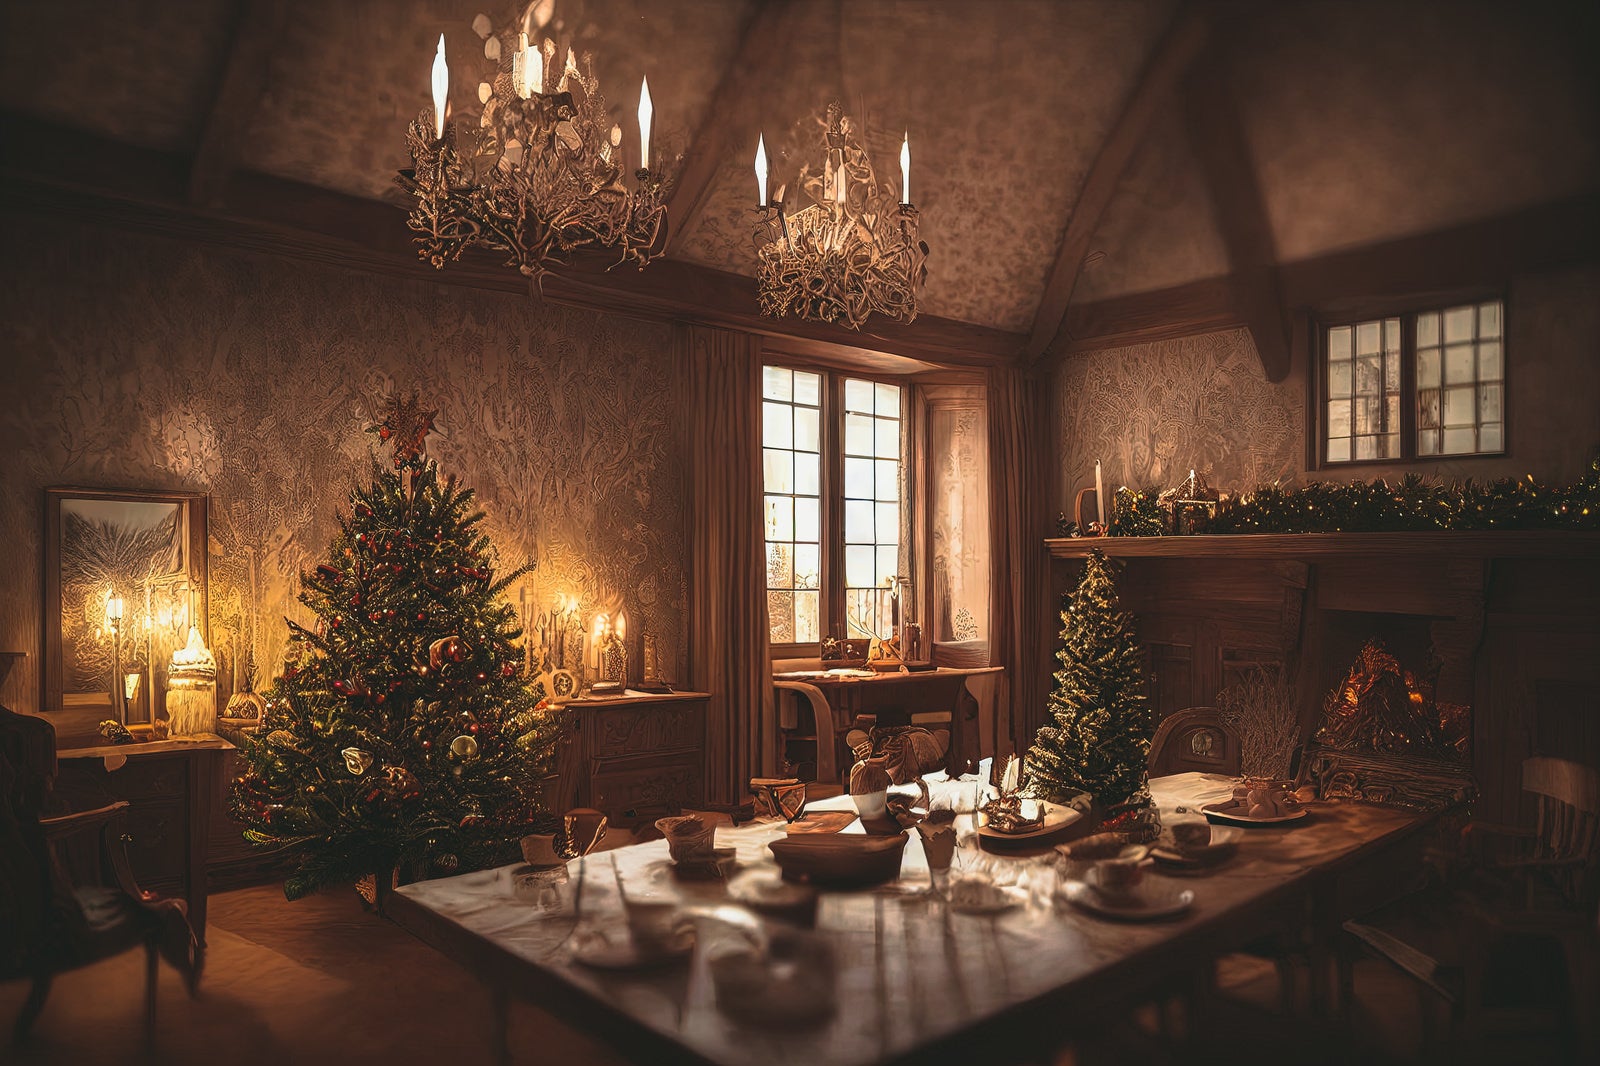 「アンティーク調の部屋とクリスマスツリーが飾られたディナー」の写真